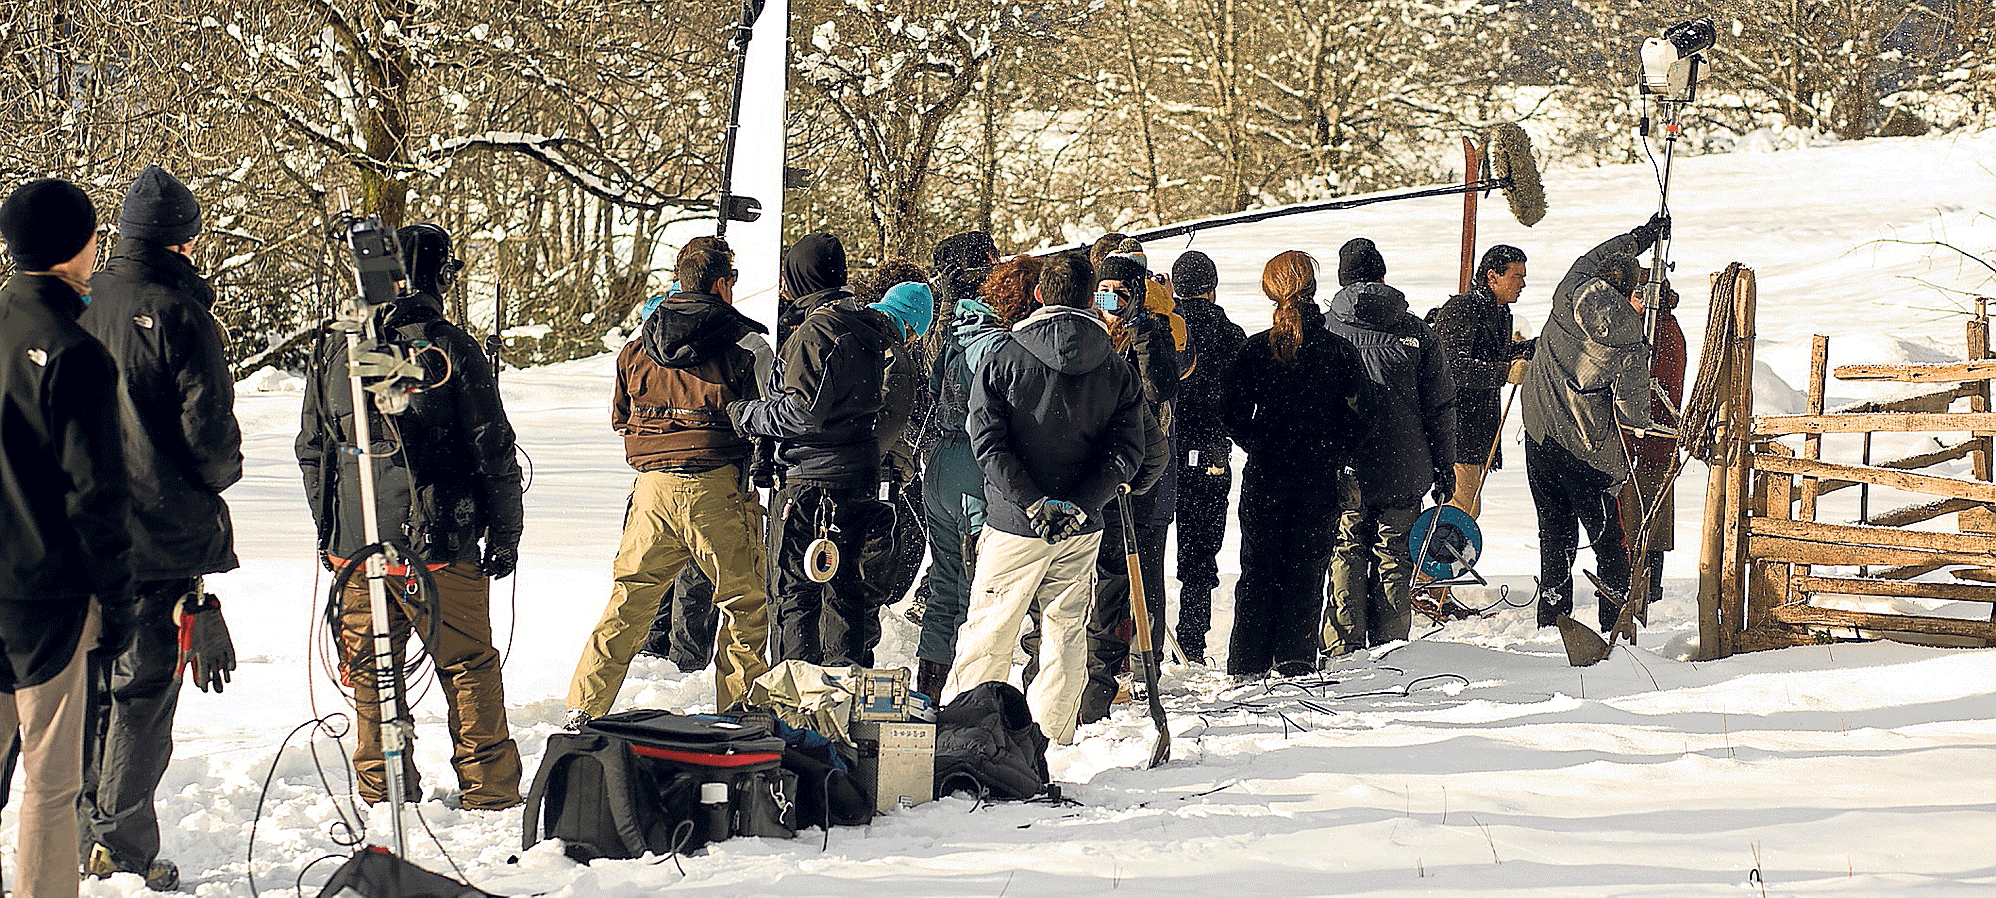 El rodaje de 'Palmeras en la nieve' finalizó el 20 de enero en el valle de Pineta (Bielsa) con Mario Casas, esquiando bajo el micrófono, como uno de los protagonistas